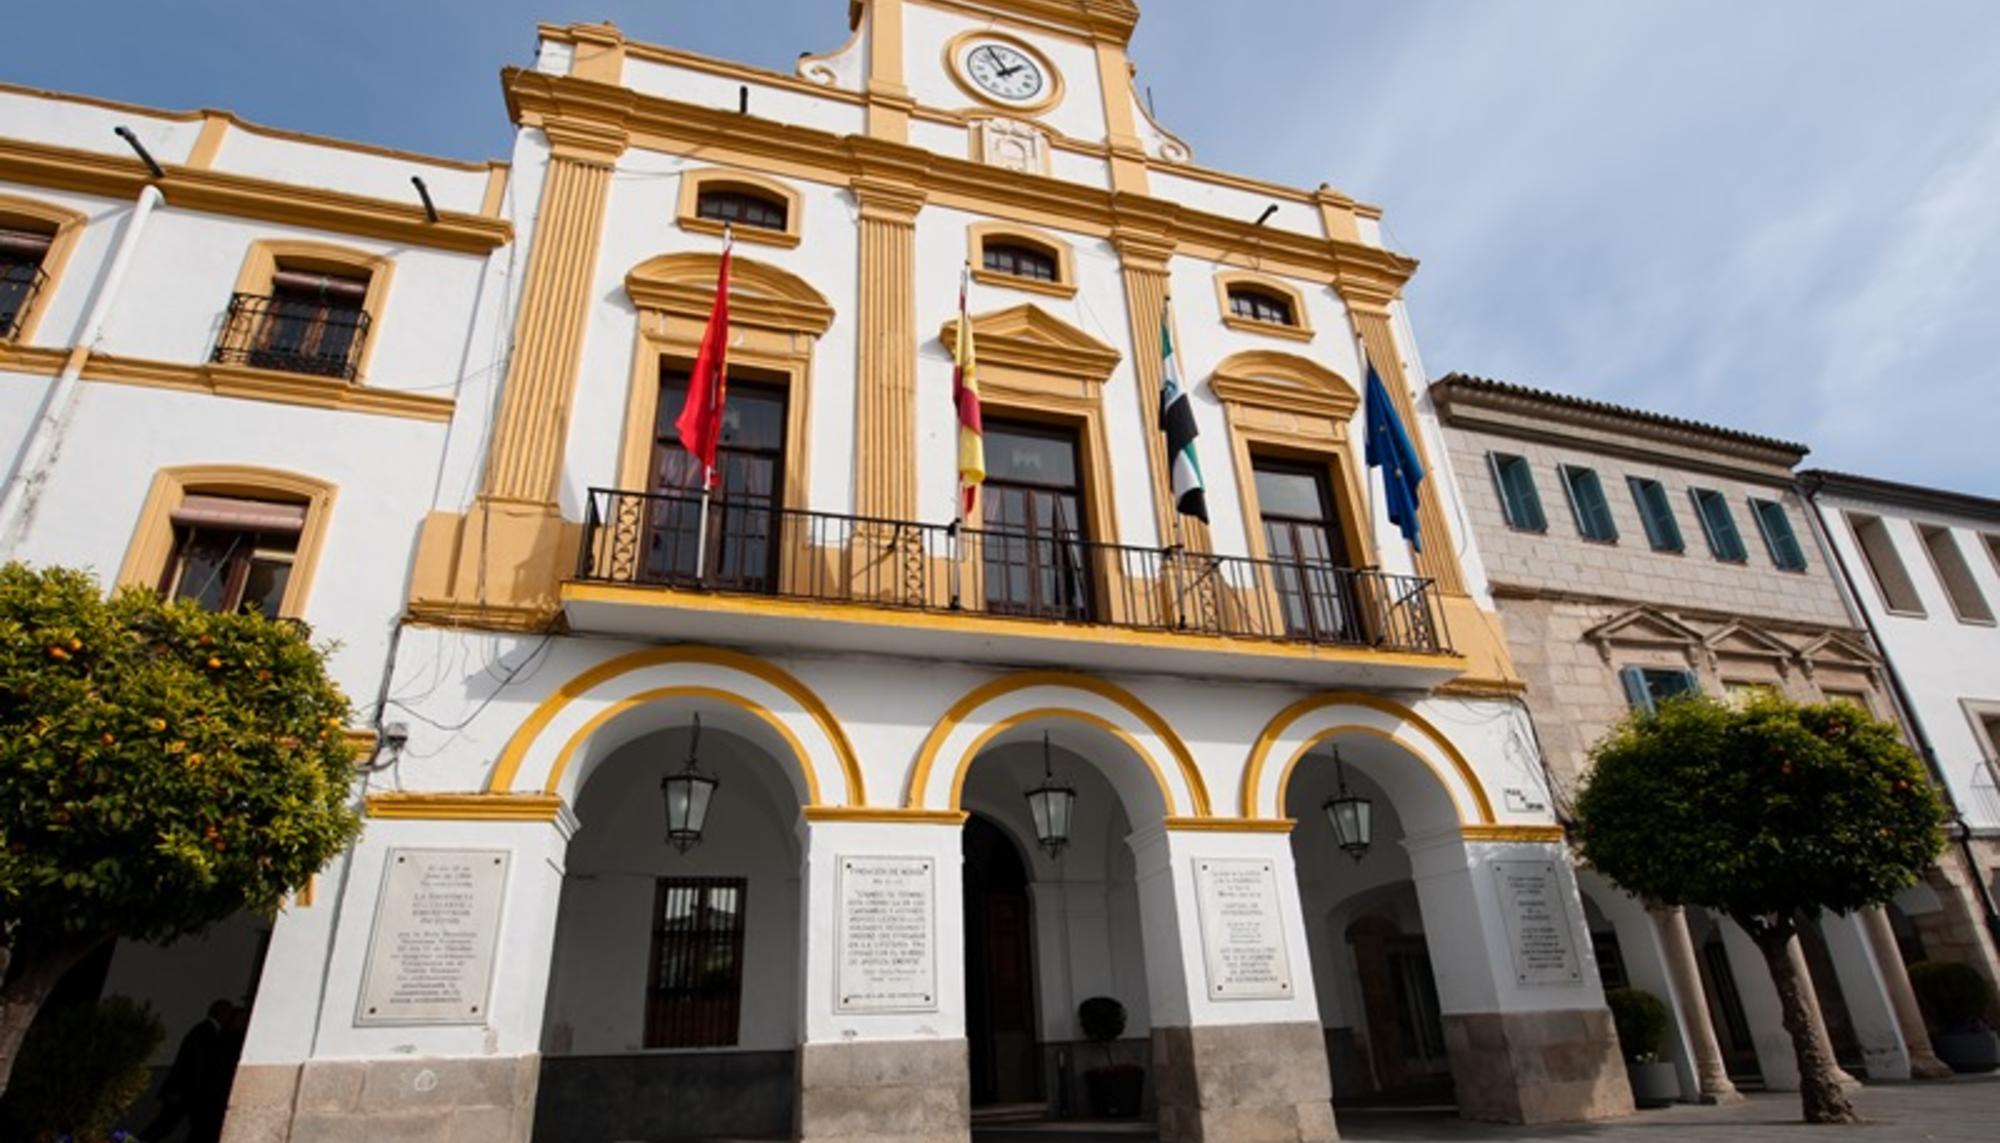 Ayuntamiento de Mérida